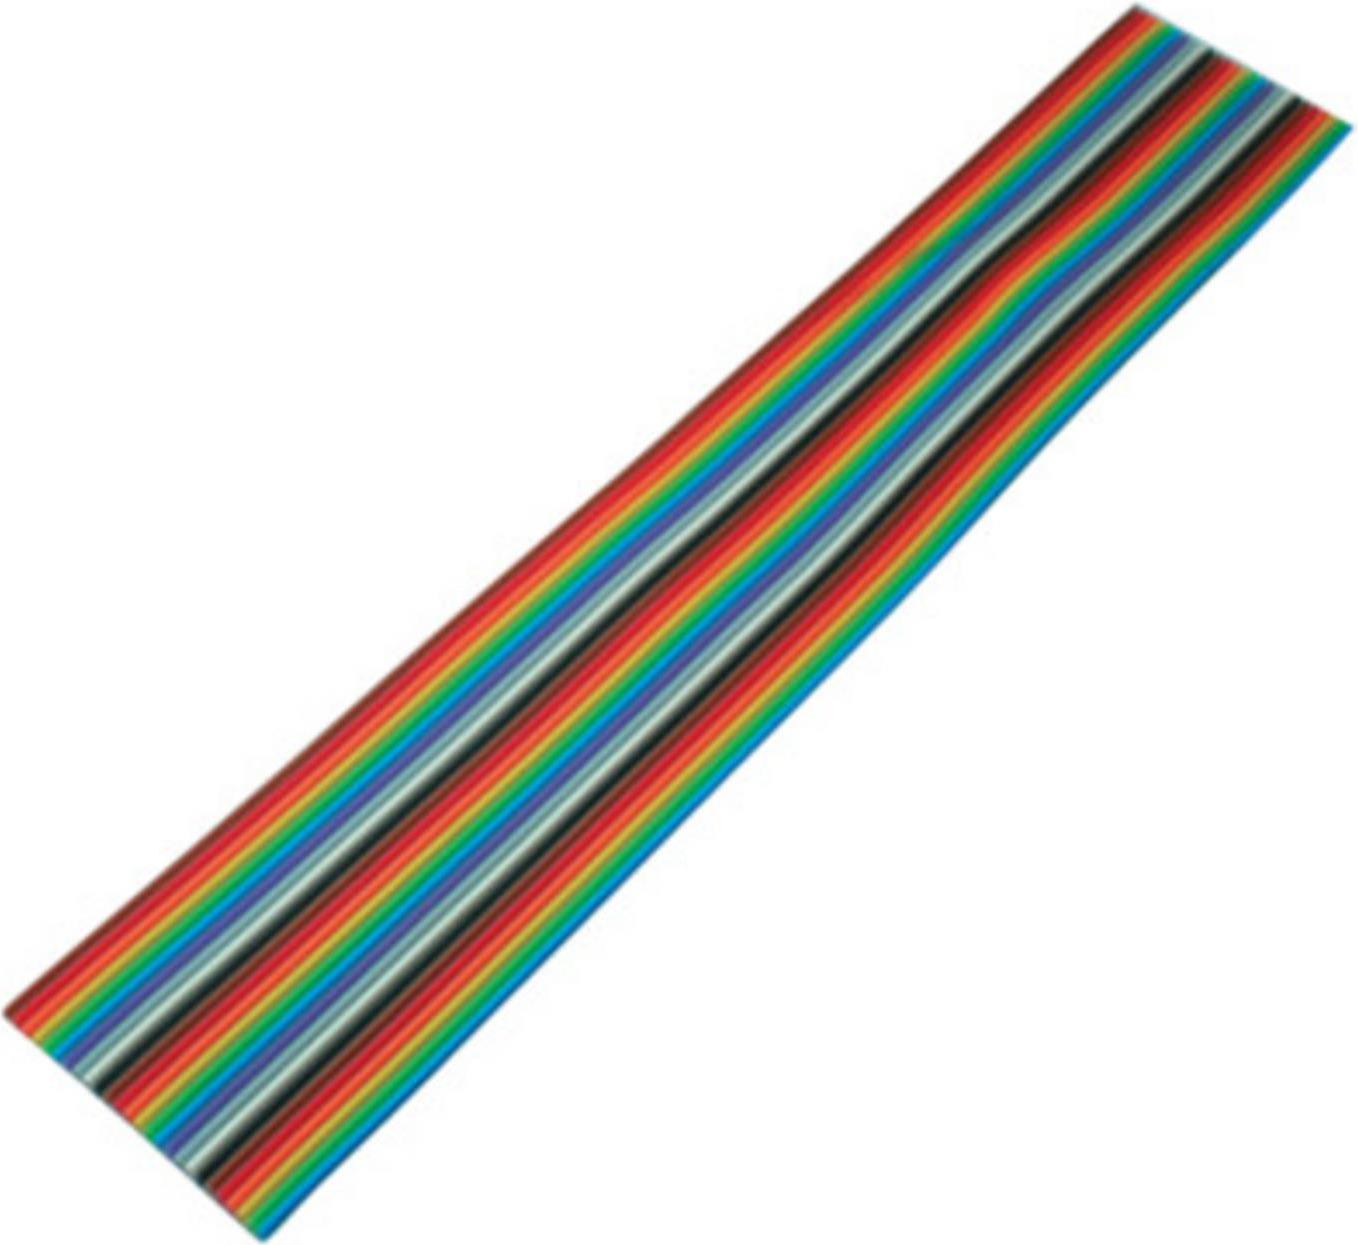 S-CONN S/CONN maximum connectivity Flachkabel, farbig Raster 1,27 mm, 26 pin, 3,0m (79069-3)